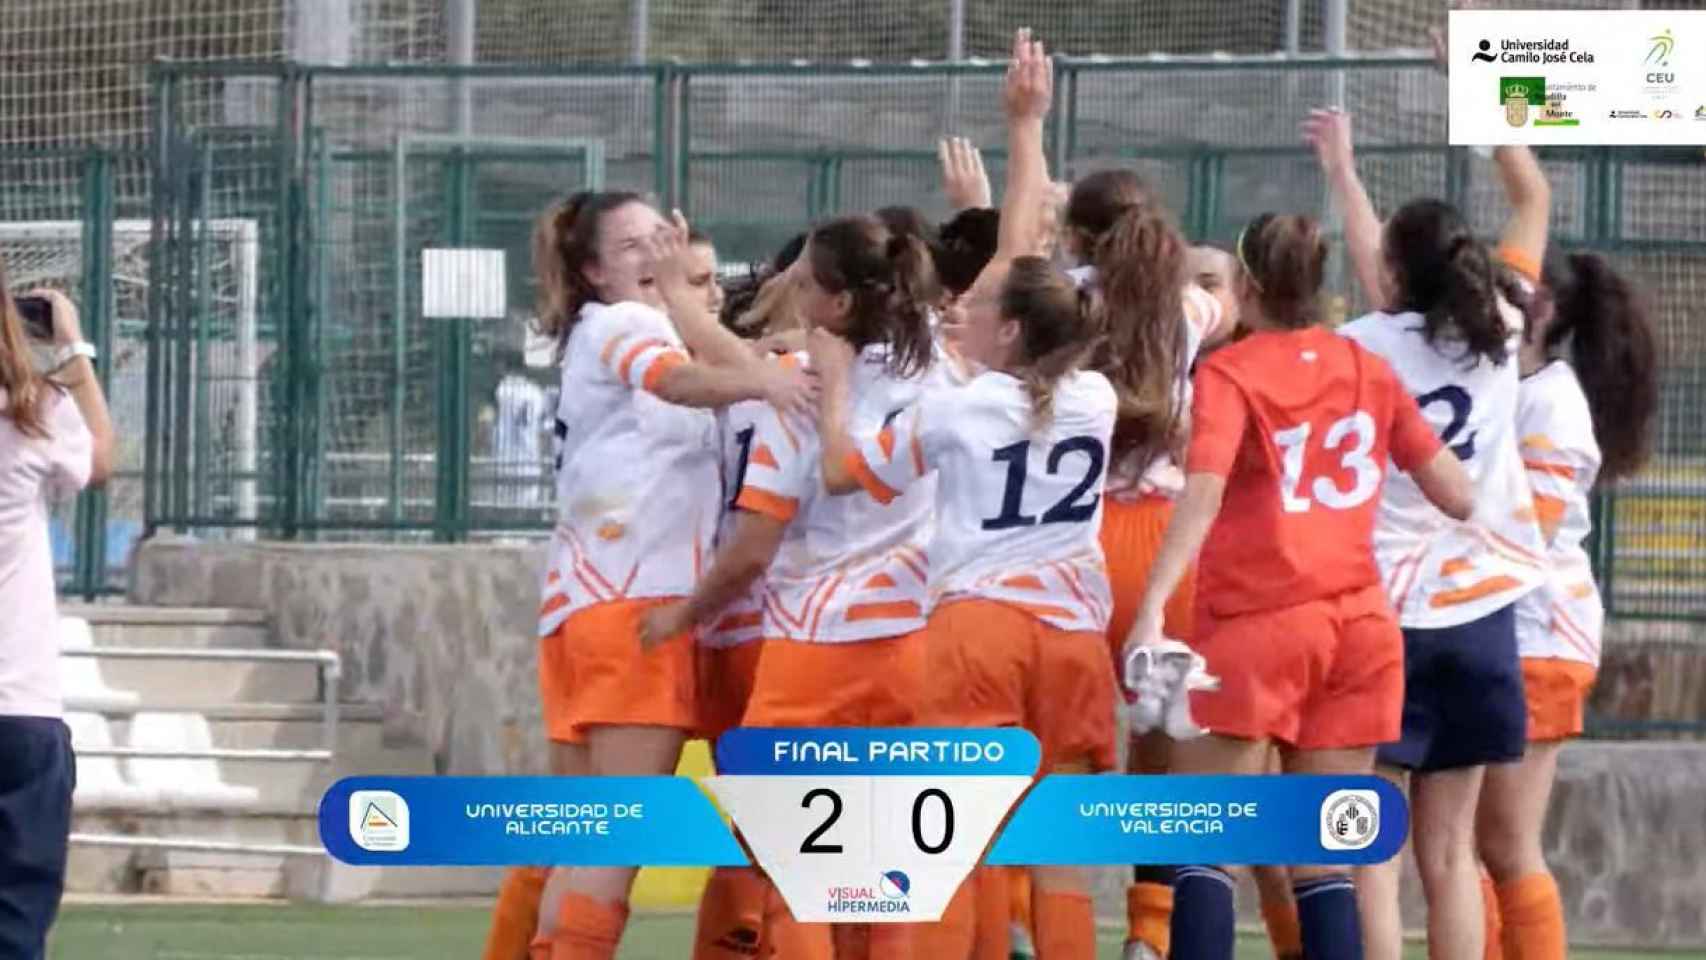 El equipo femenino de fútbol de la Universidad de Alicante gana el Campeonato de España.